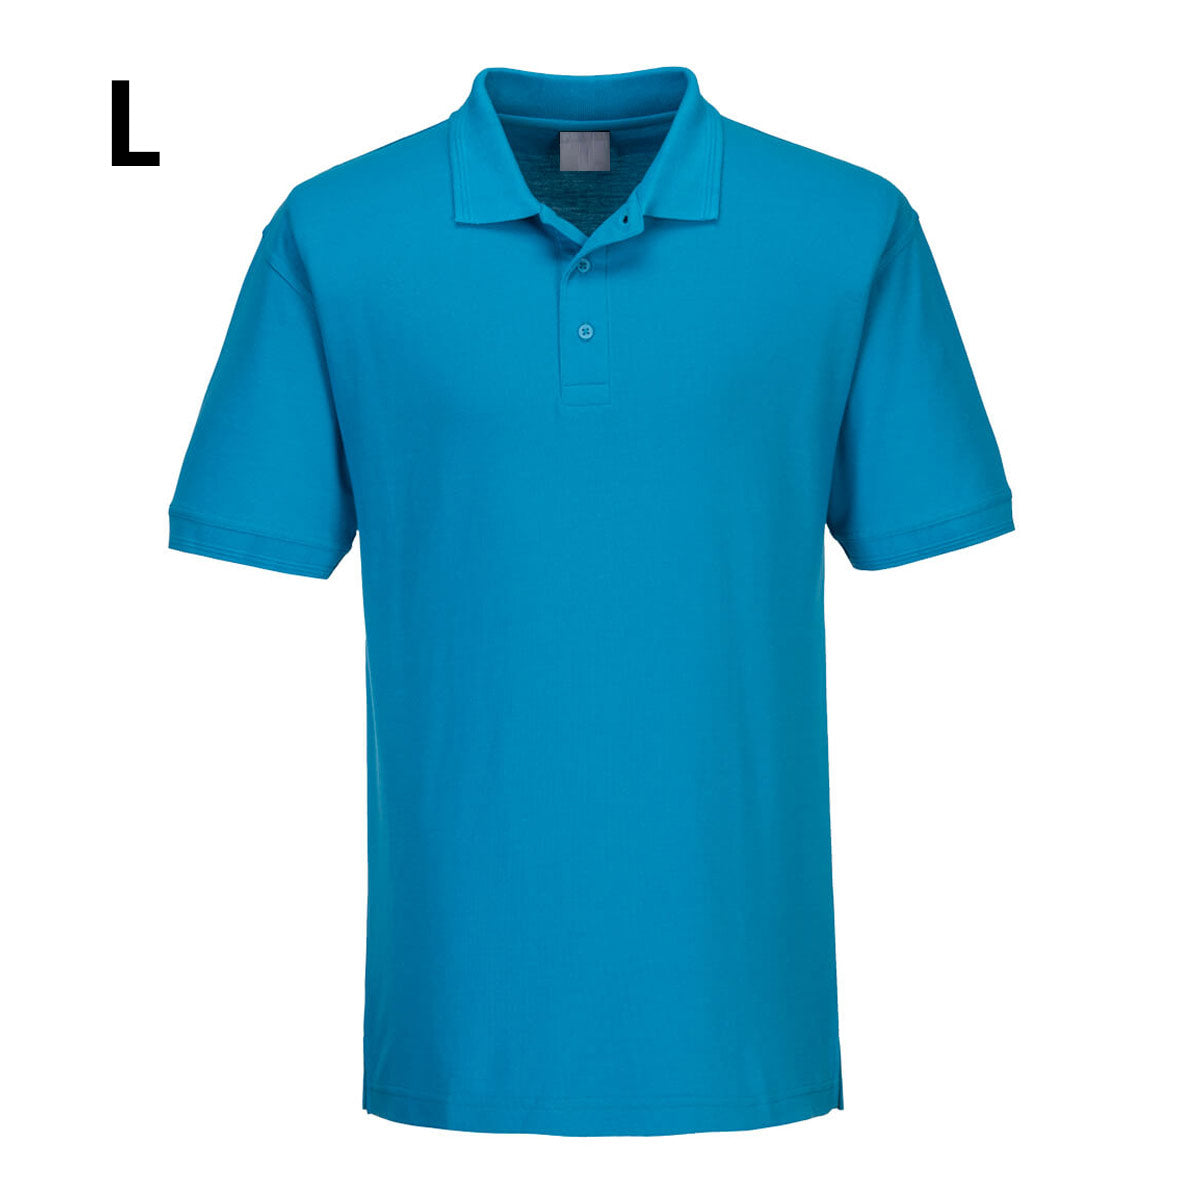 Poloskjorte for menn - Vannblå - størrelse: L